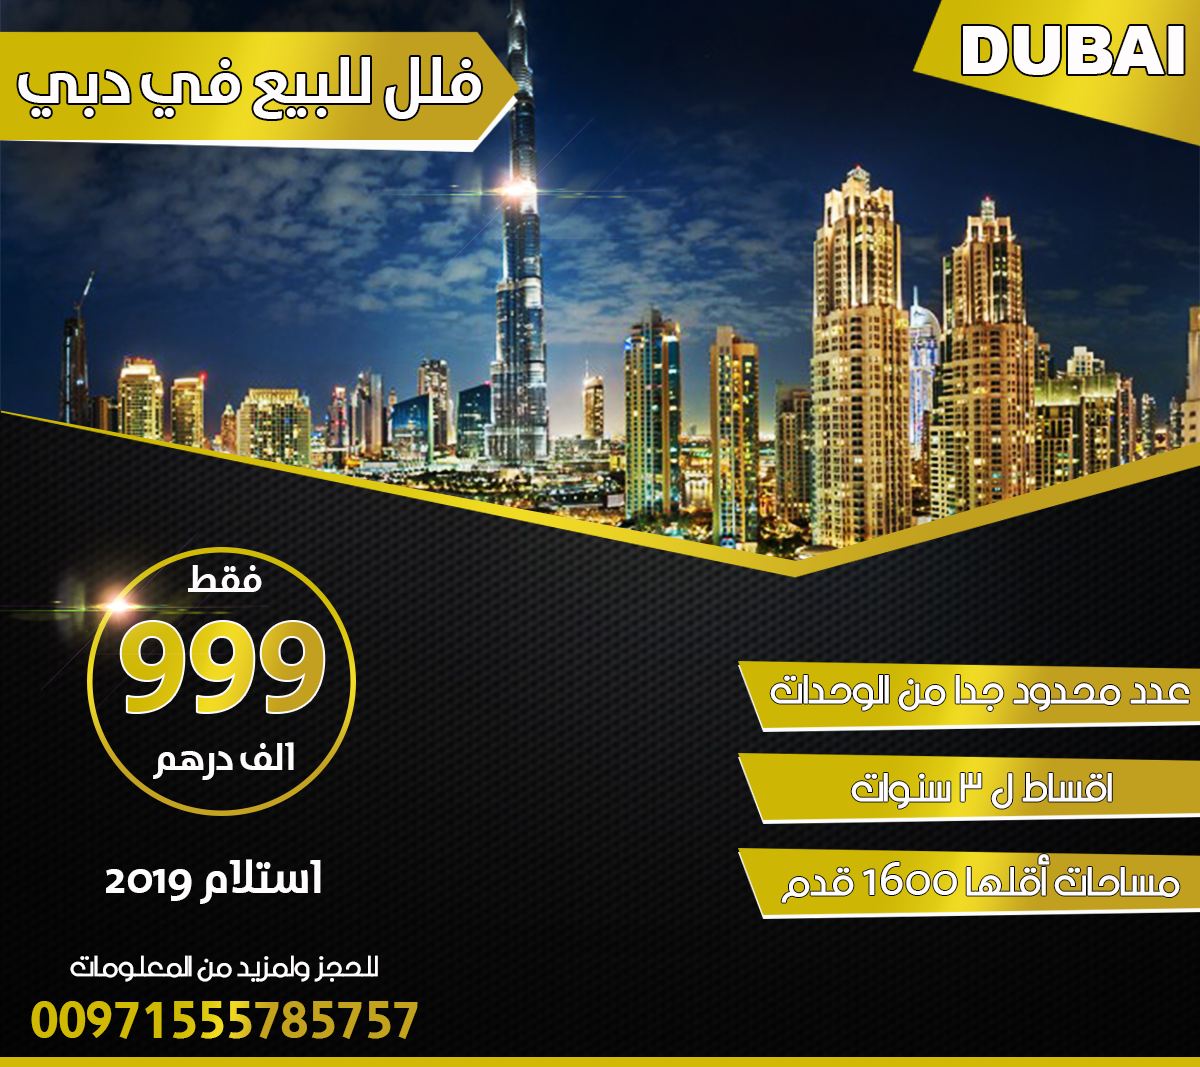 فلل للبيع في دبي  P_1054xr4w62